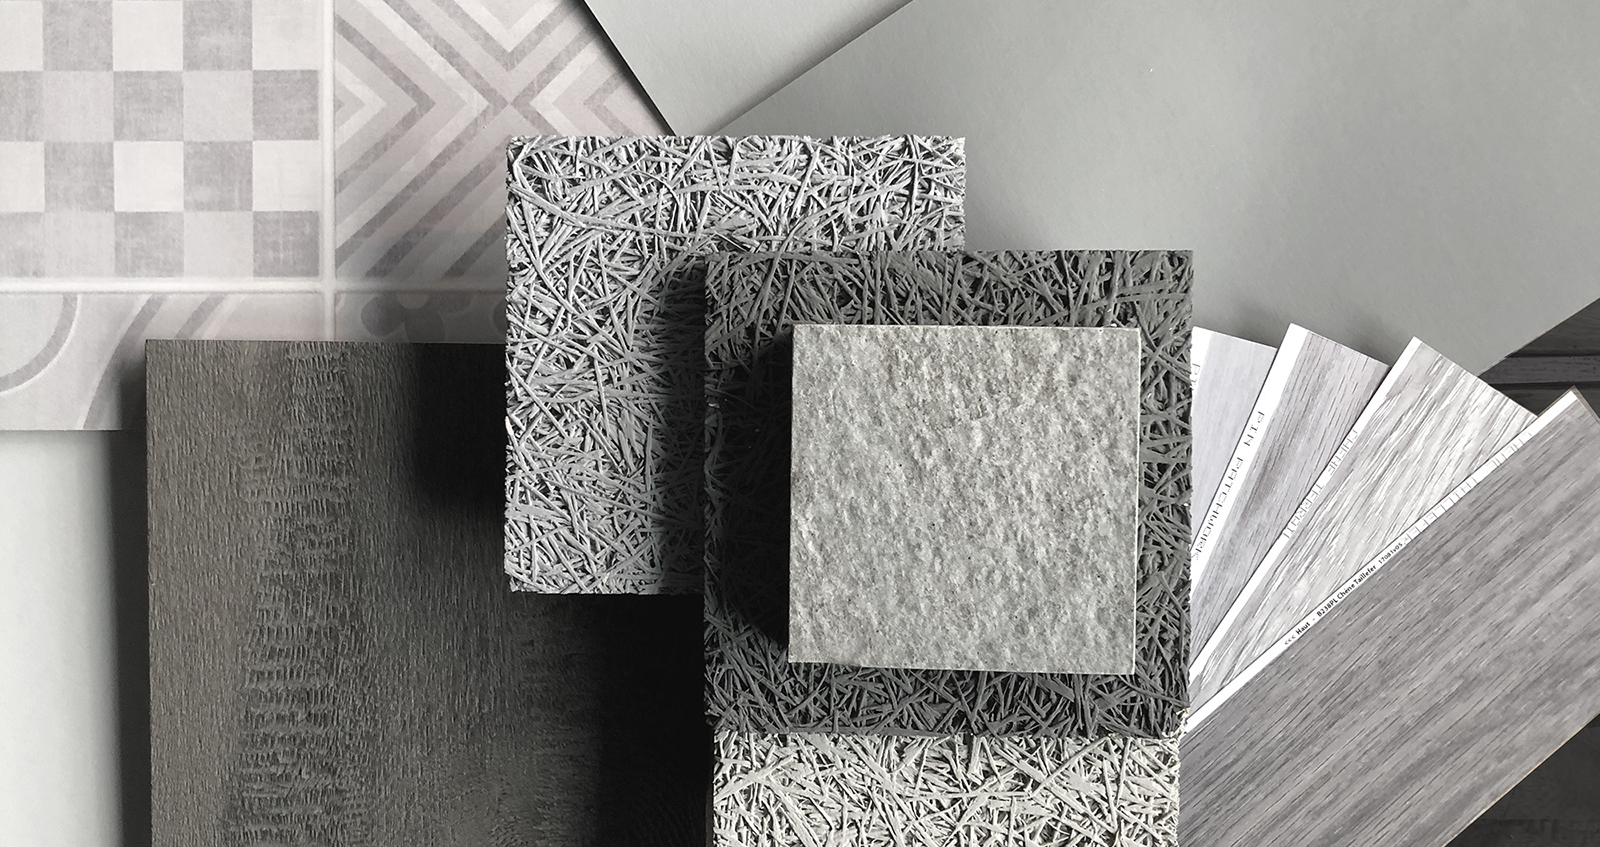 un pêle même de matériaux dans les tons gris constituent un joli Moodboard tendance : échantillons de parquets, de plafond acoustique, de revêtement mural...